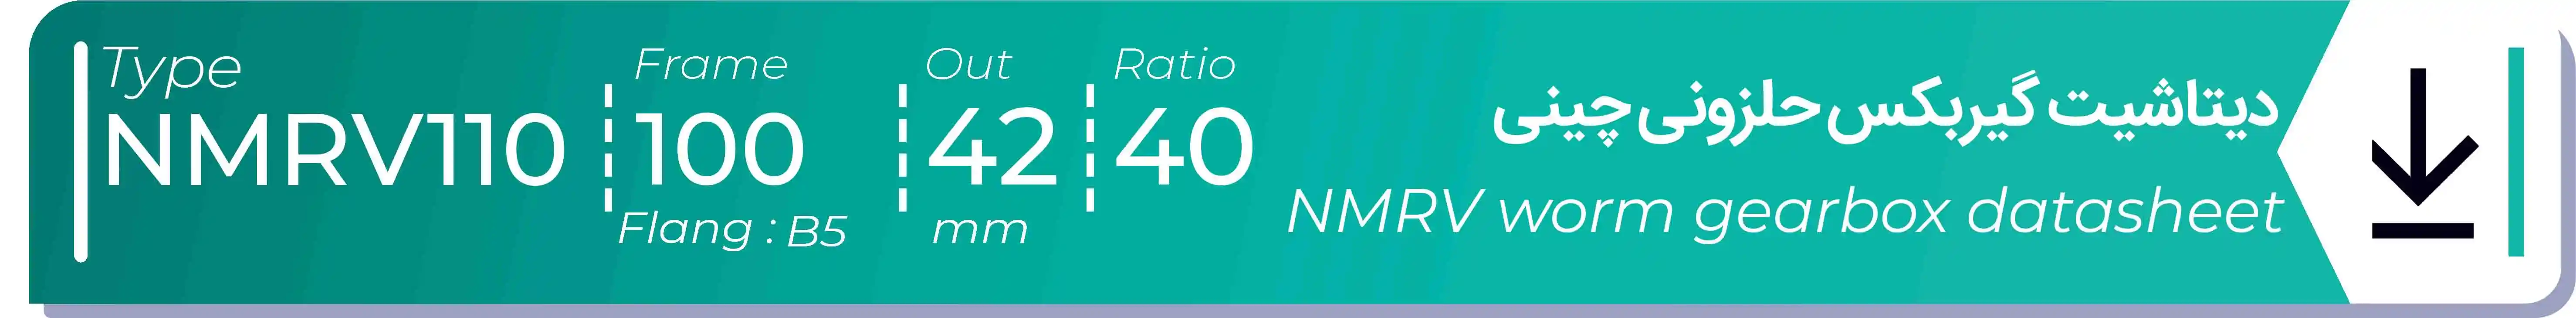  دیتاشیت و مشخصات فنی گیربکس حلزونی چینی   NMRV110  -  با خروجی 42- میلی متر و نسبت40 و فریم 100